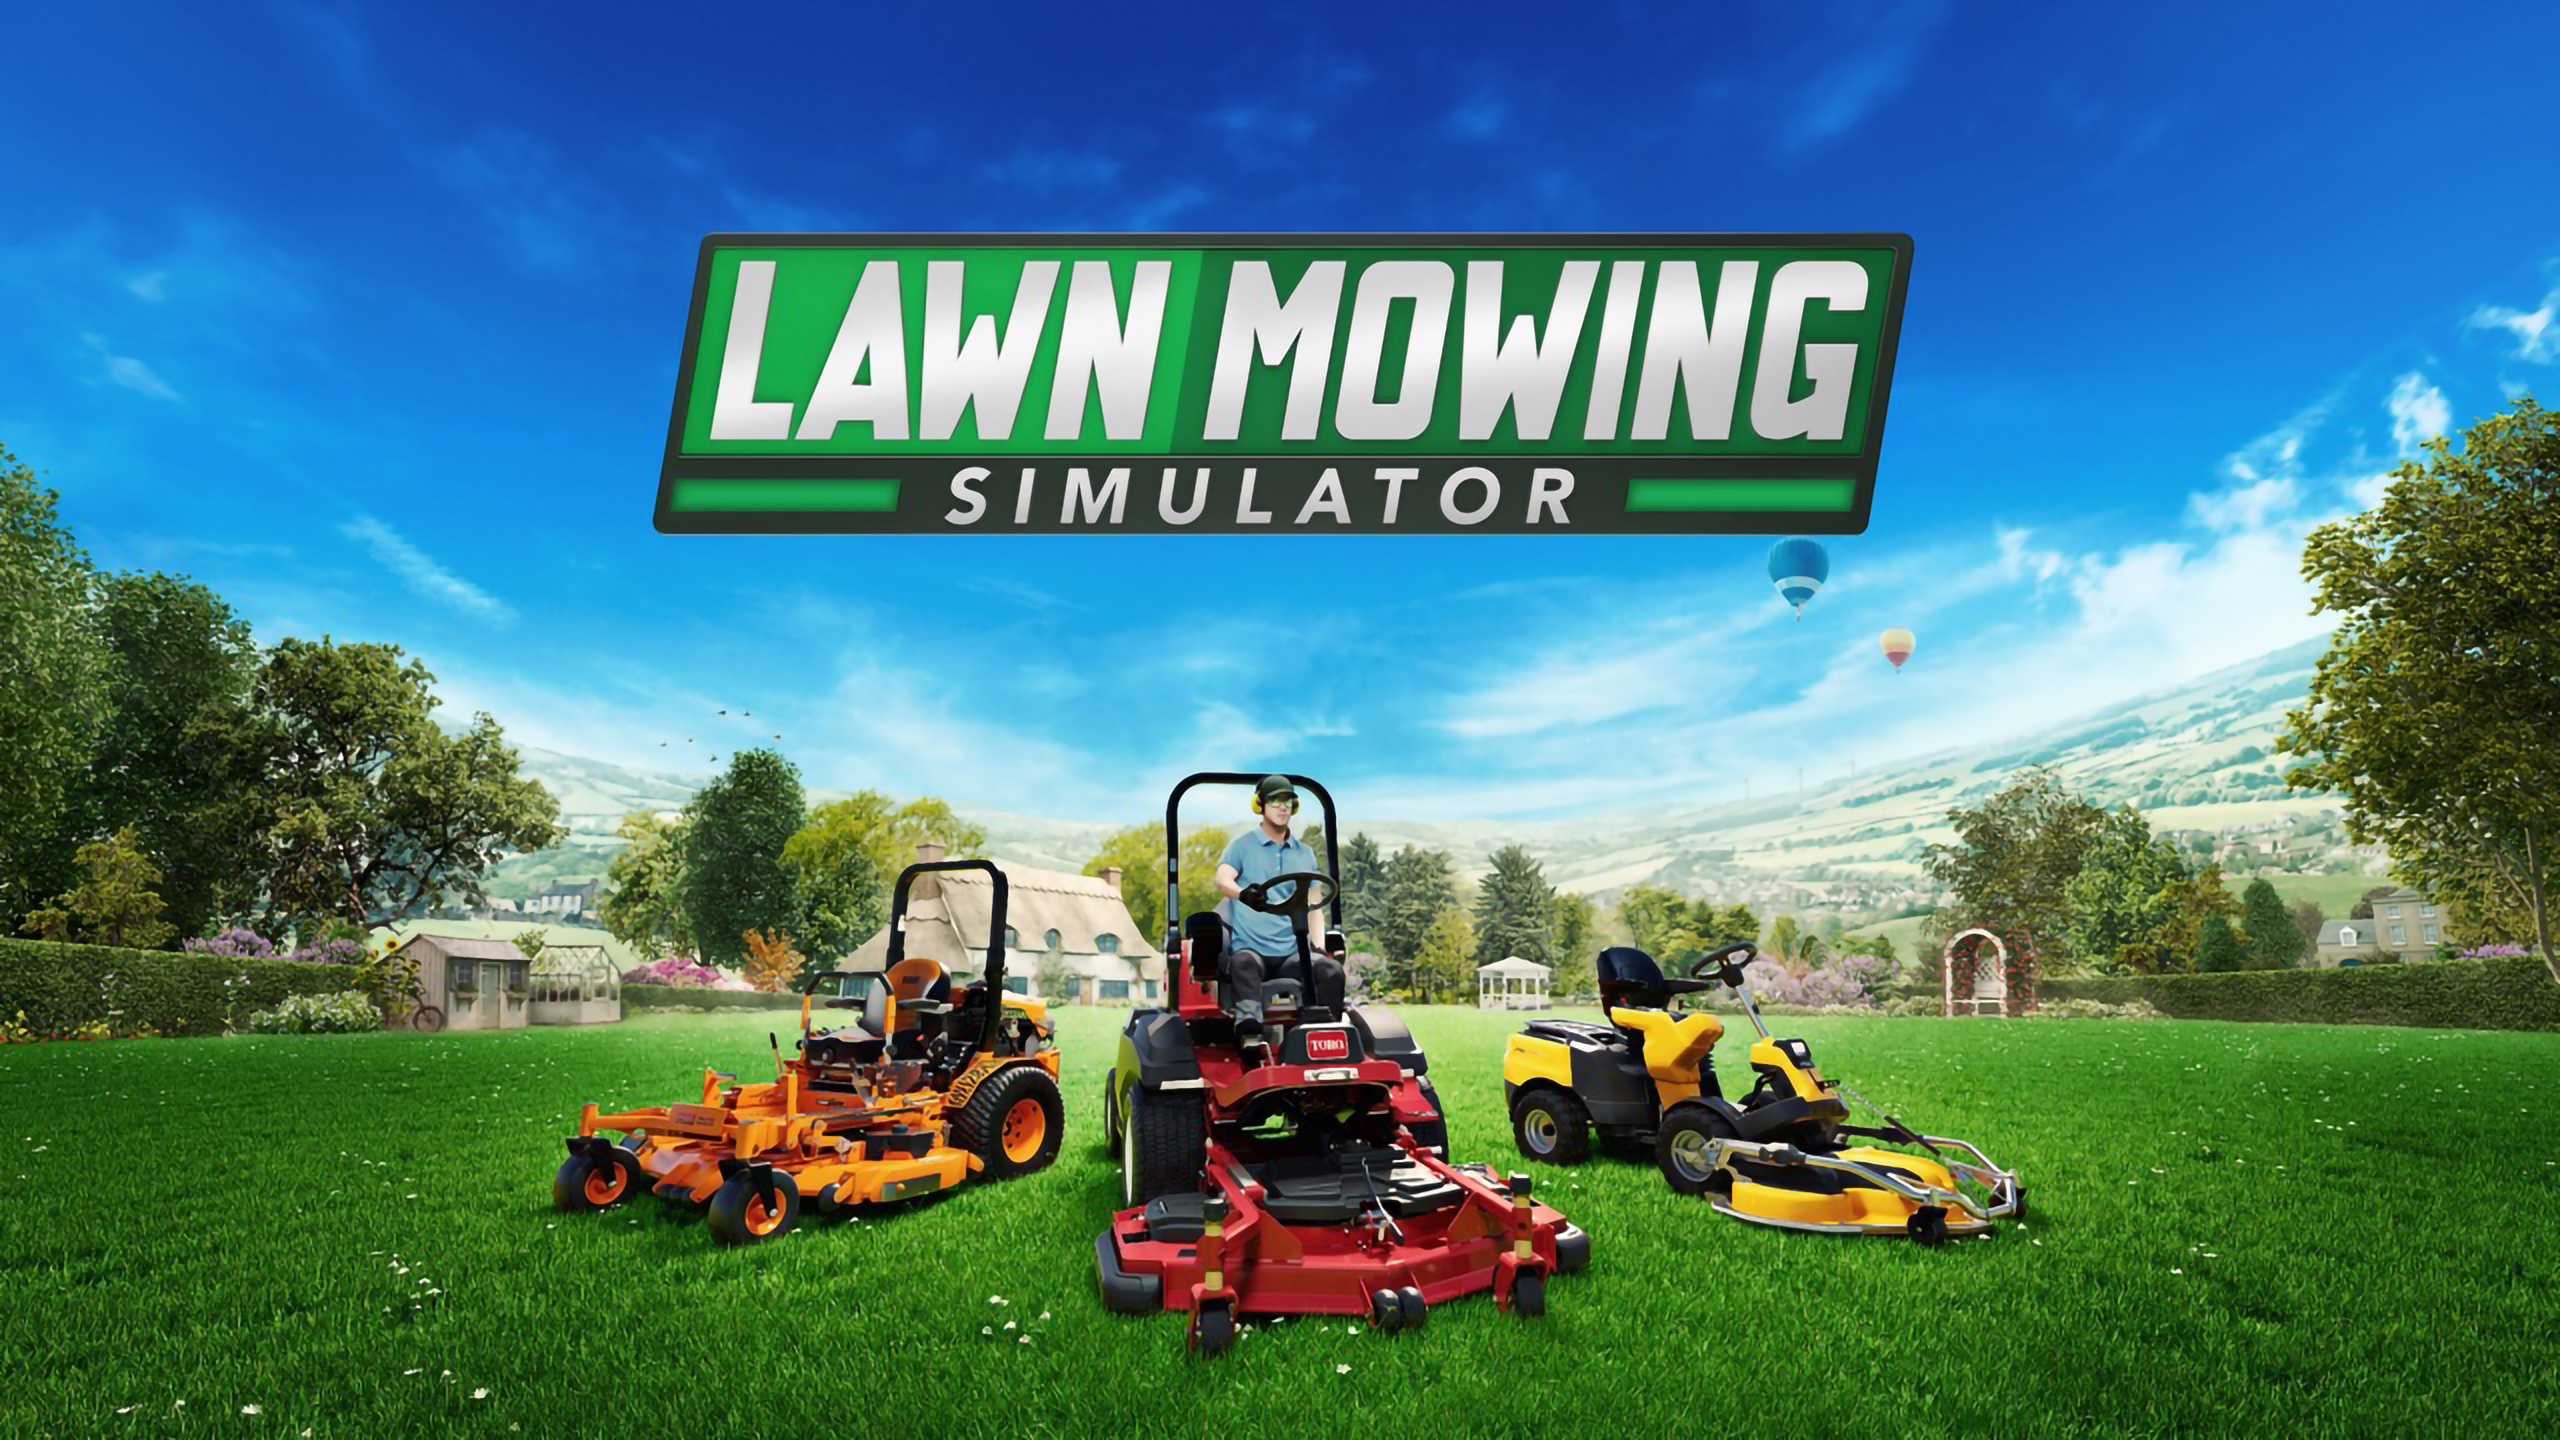 Η Epic Games αυτή την εβδομάδα δίνει έναν τίτλο δωρεάν για να προσθέσετε στην ψηφιακή σας βιβλιοθήκη. Αυτή την εβδομάδα μπορείτε να βρείτε στο Epic Games Store εντελώς δωρεάν το Lawn Mowing Simulator.